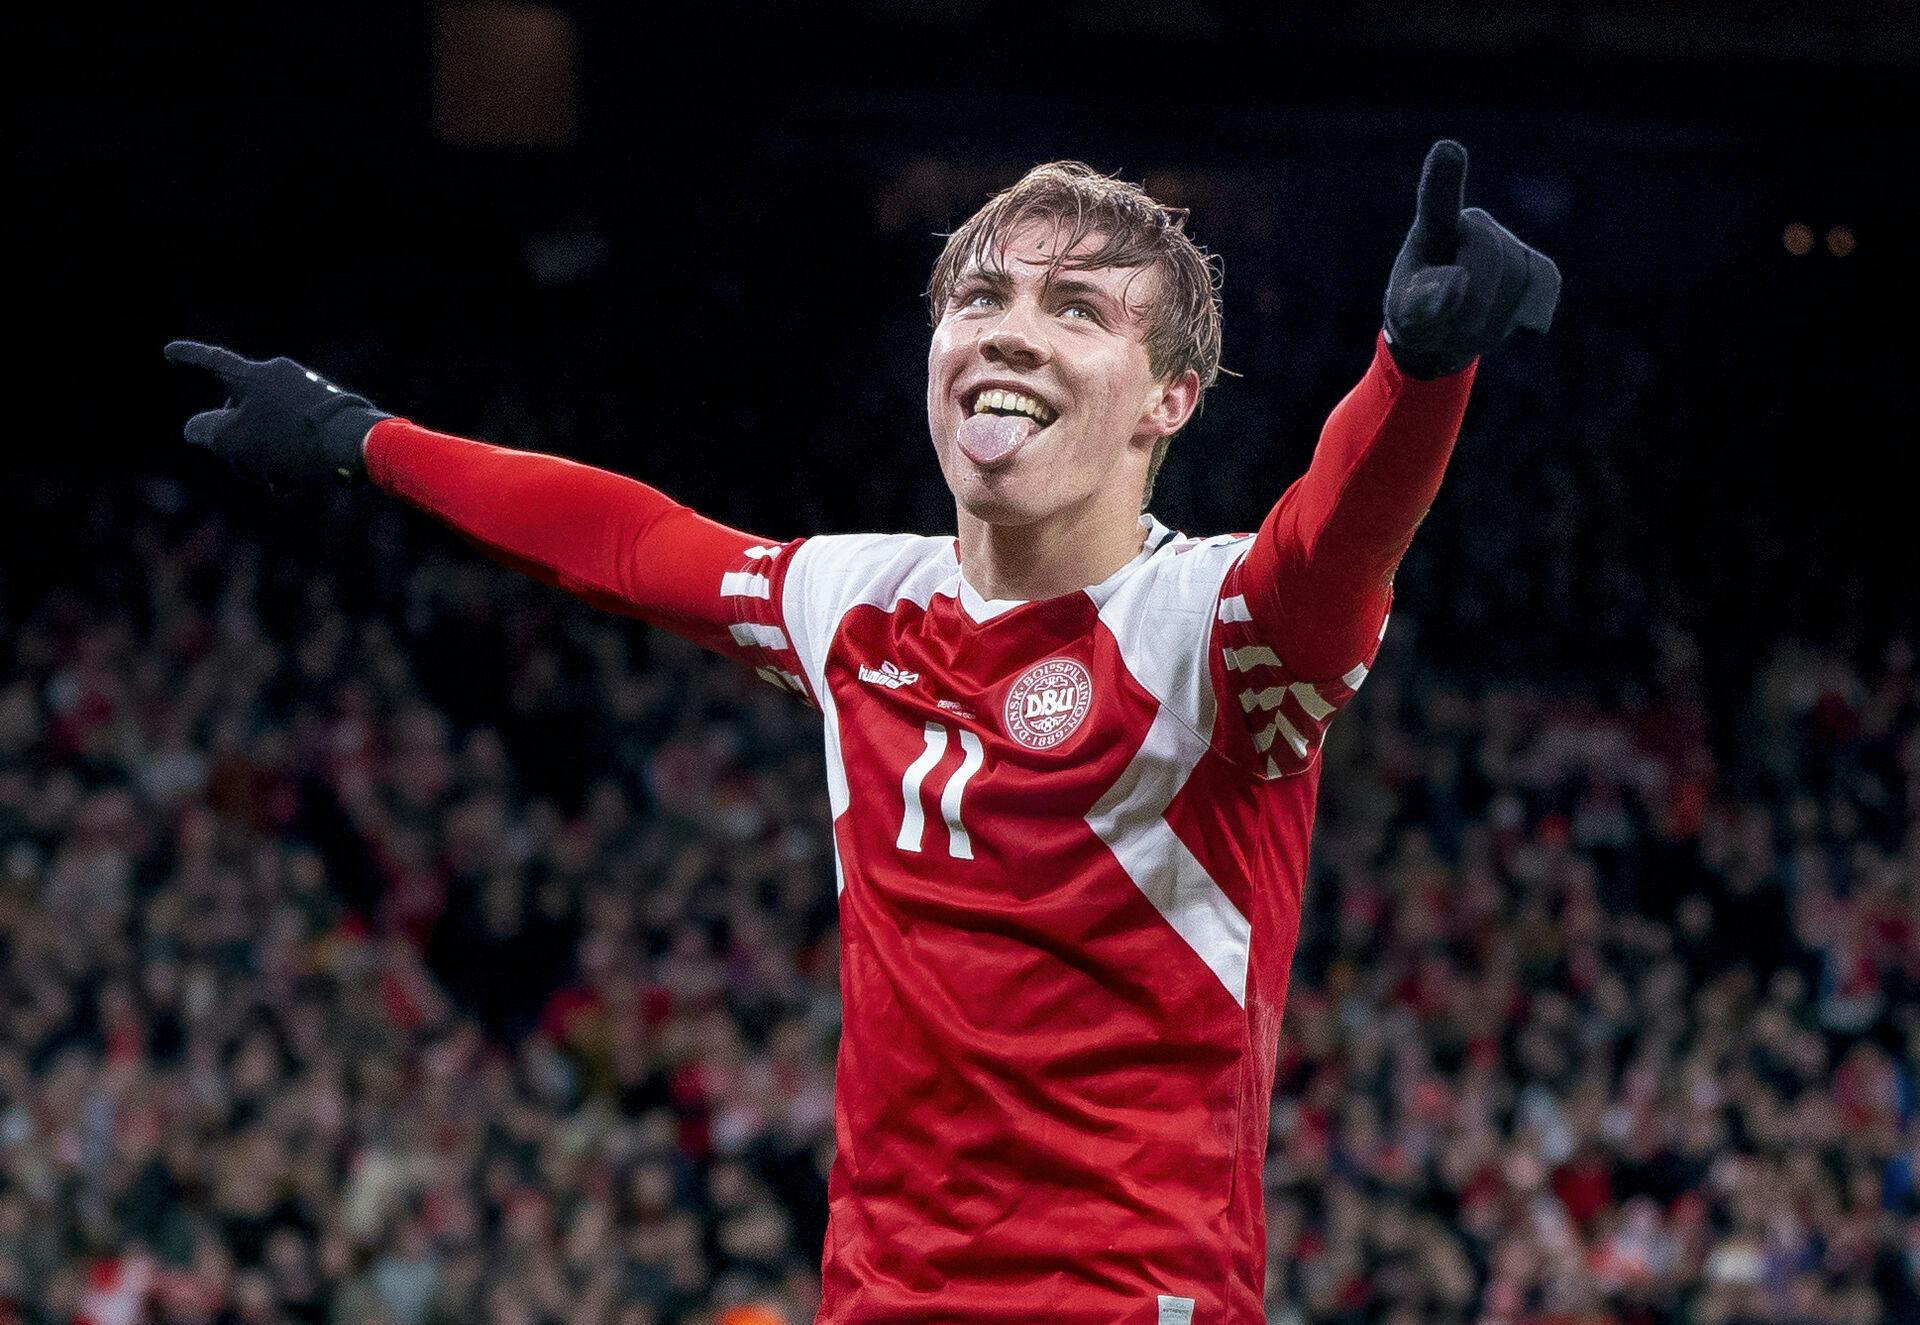 Danmarks Rasmus Højlund til 2-1 under EM kvalifikationskamp mellem Danmark - Finland i Parken. Han nåede lige endnu et mål.